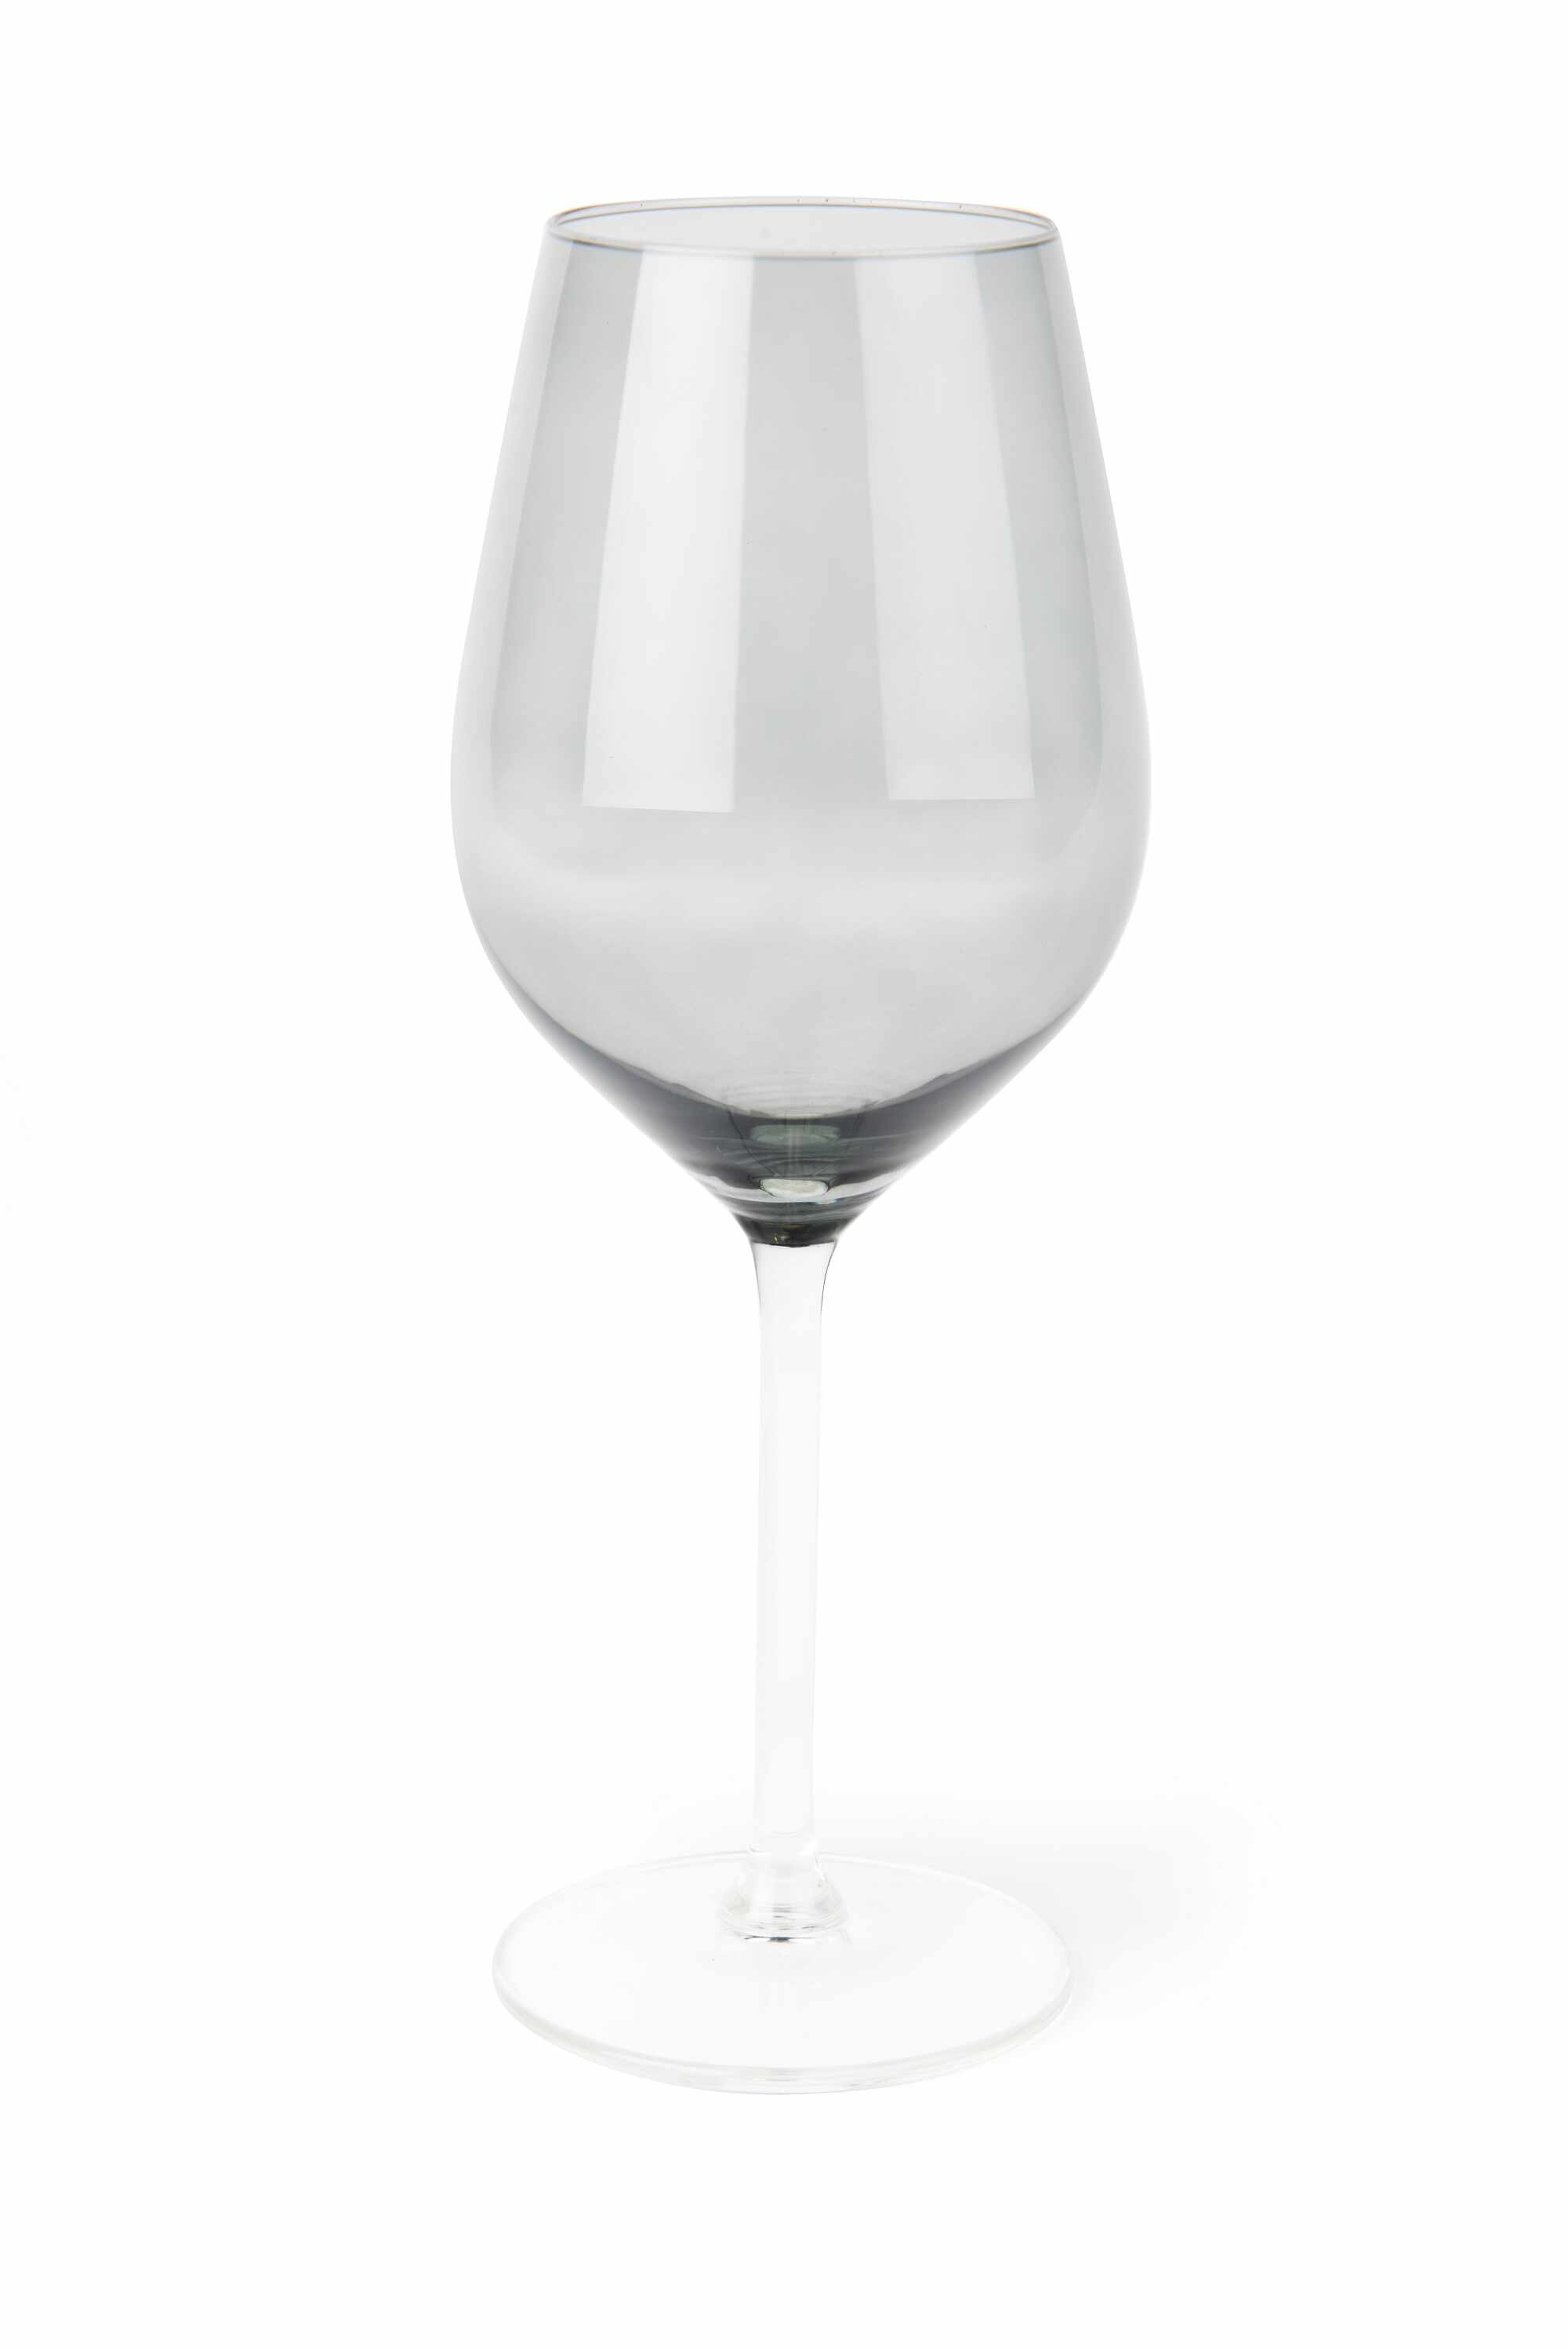 Pahar pentru vin, din sticla, 500 ml, Ø6xH23 cm, Color Wine Gri